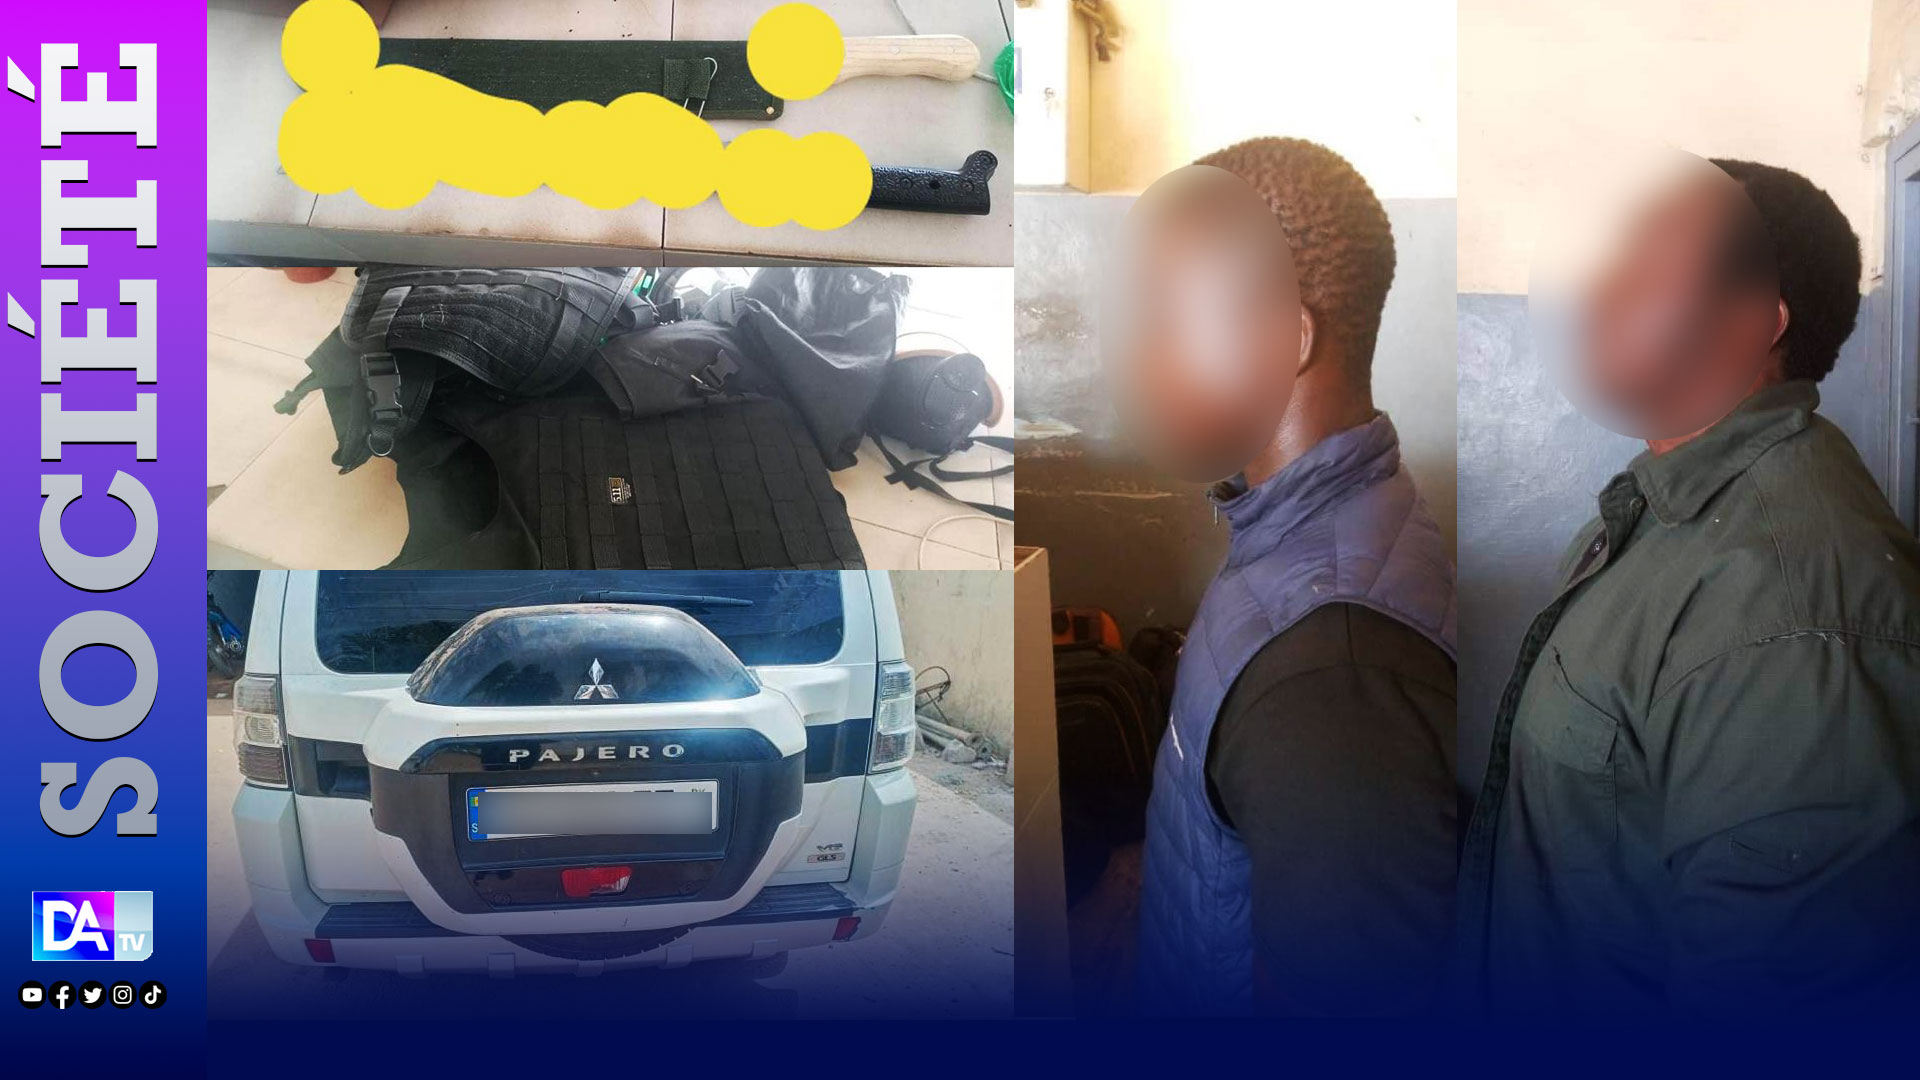 KOLDA : des gardes rapprochés d’Ousmane Sonko arrêtés…